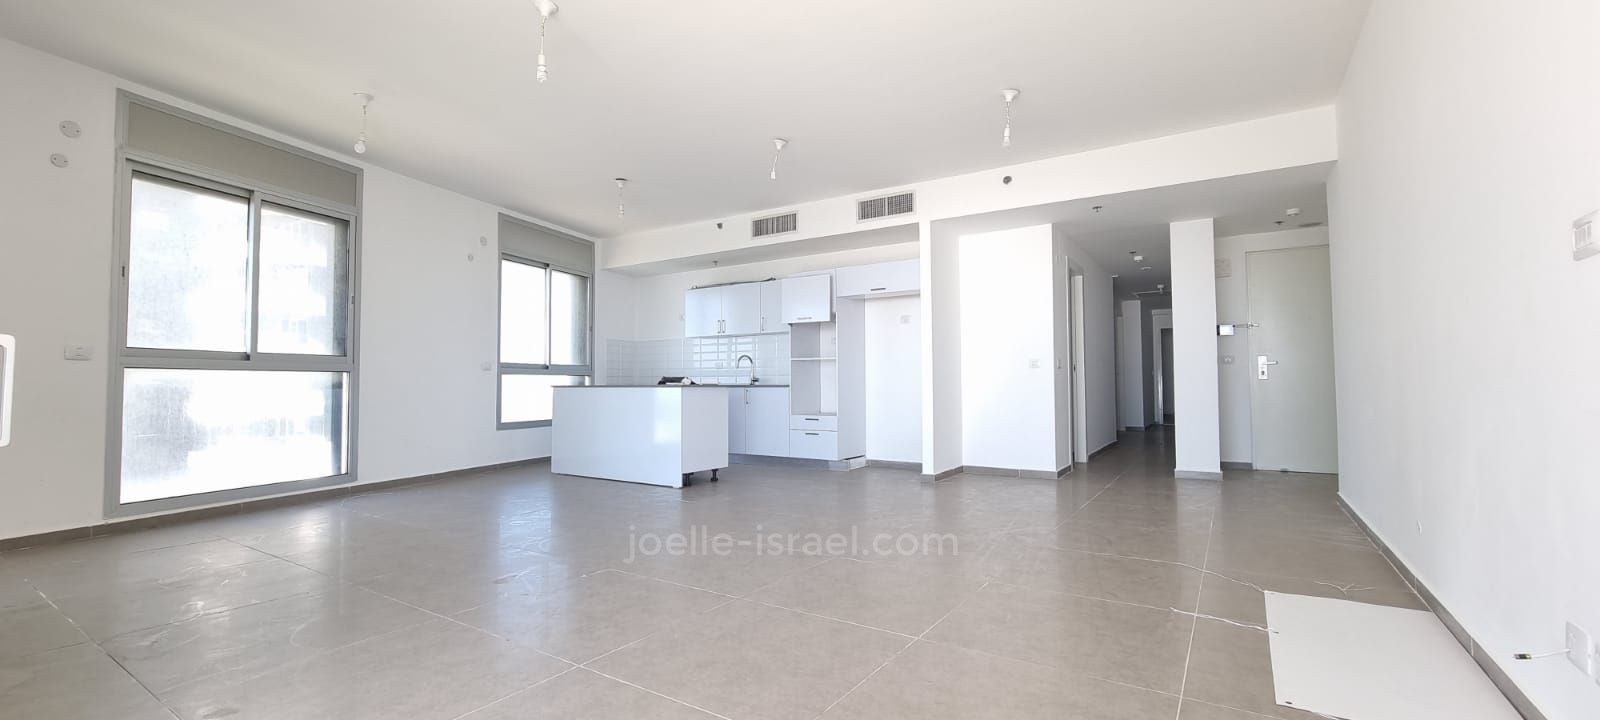 Appartement 4 pièces Netanya Nat600 316-IBL-1668